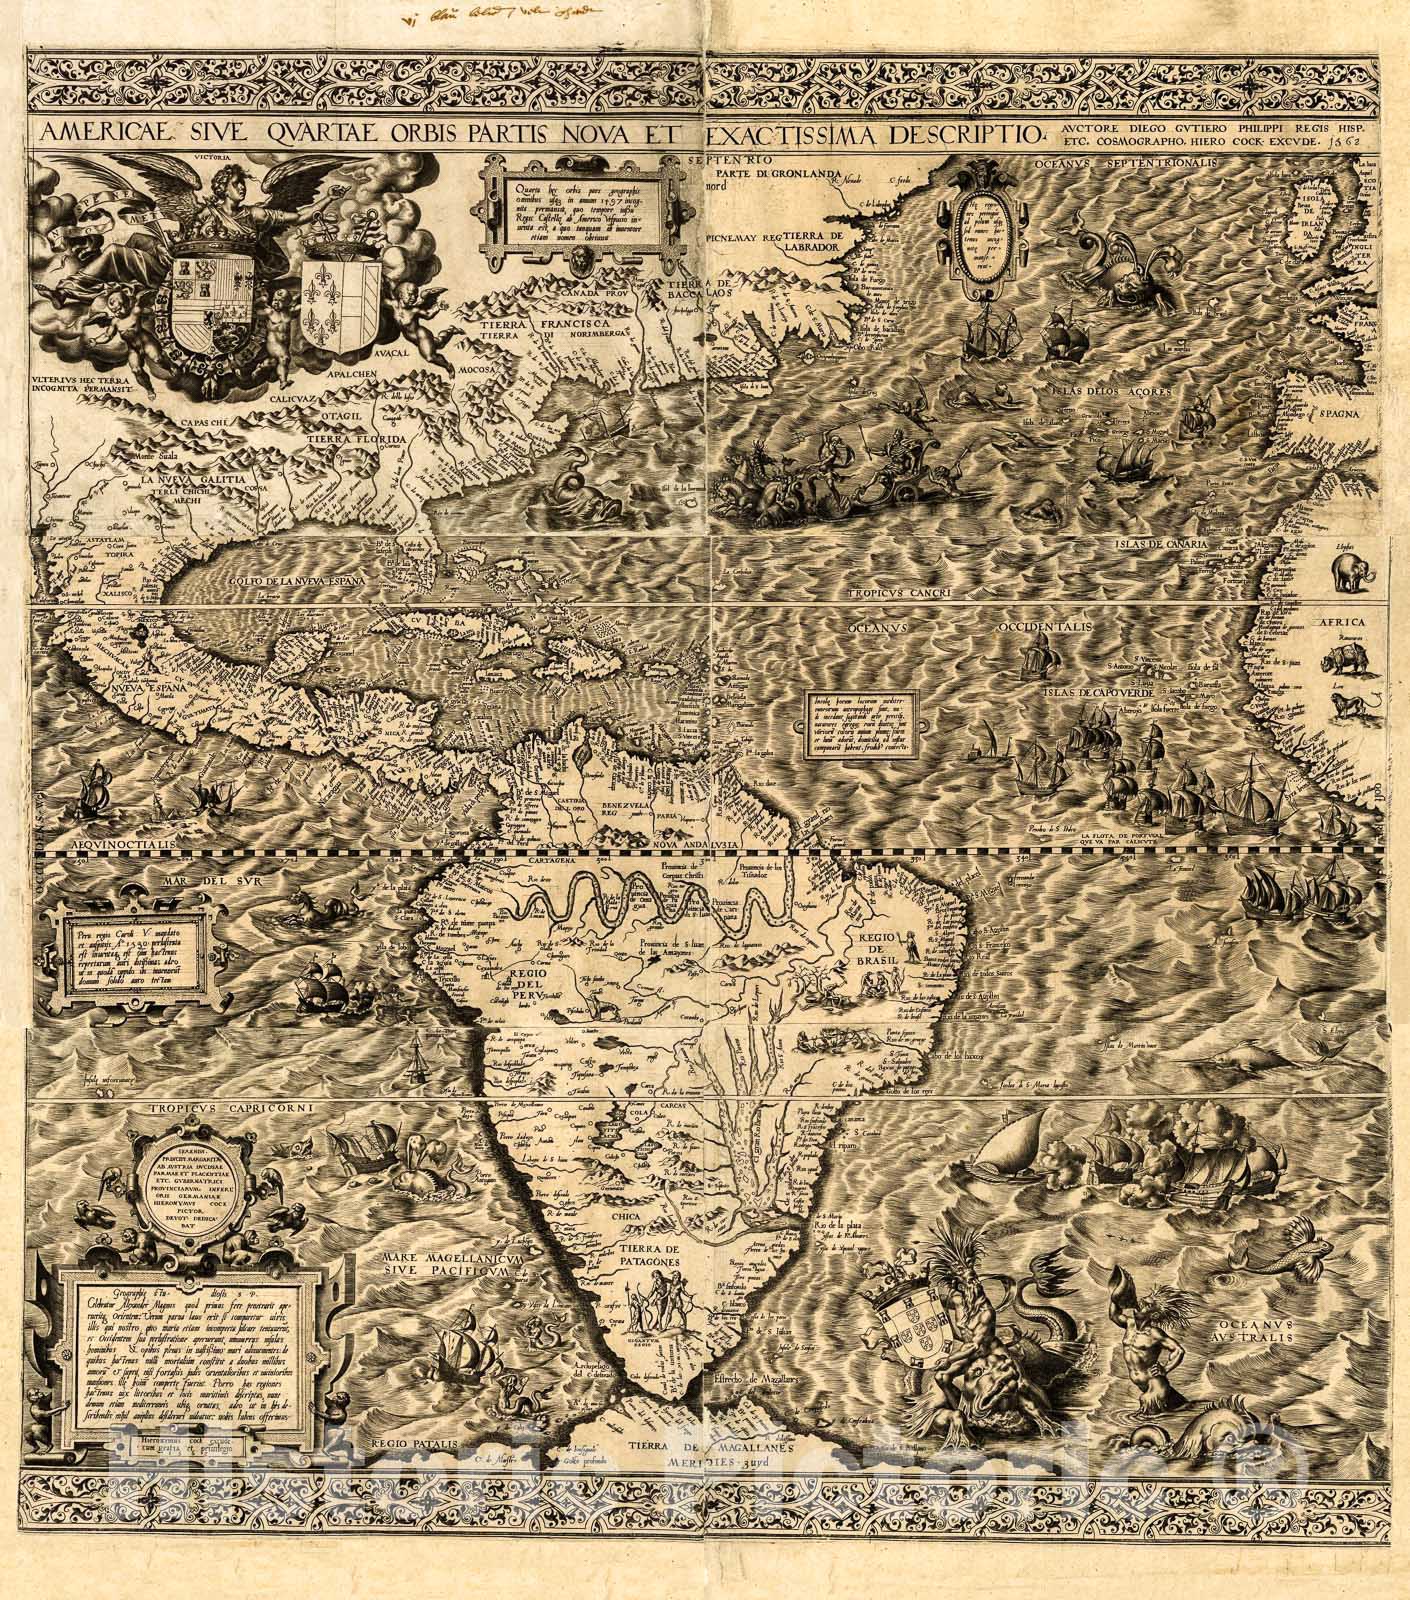 Historic 1562 Map - Americae sive qvartae orbis partis nova et exactissima descriptio